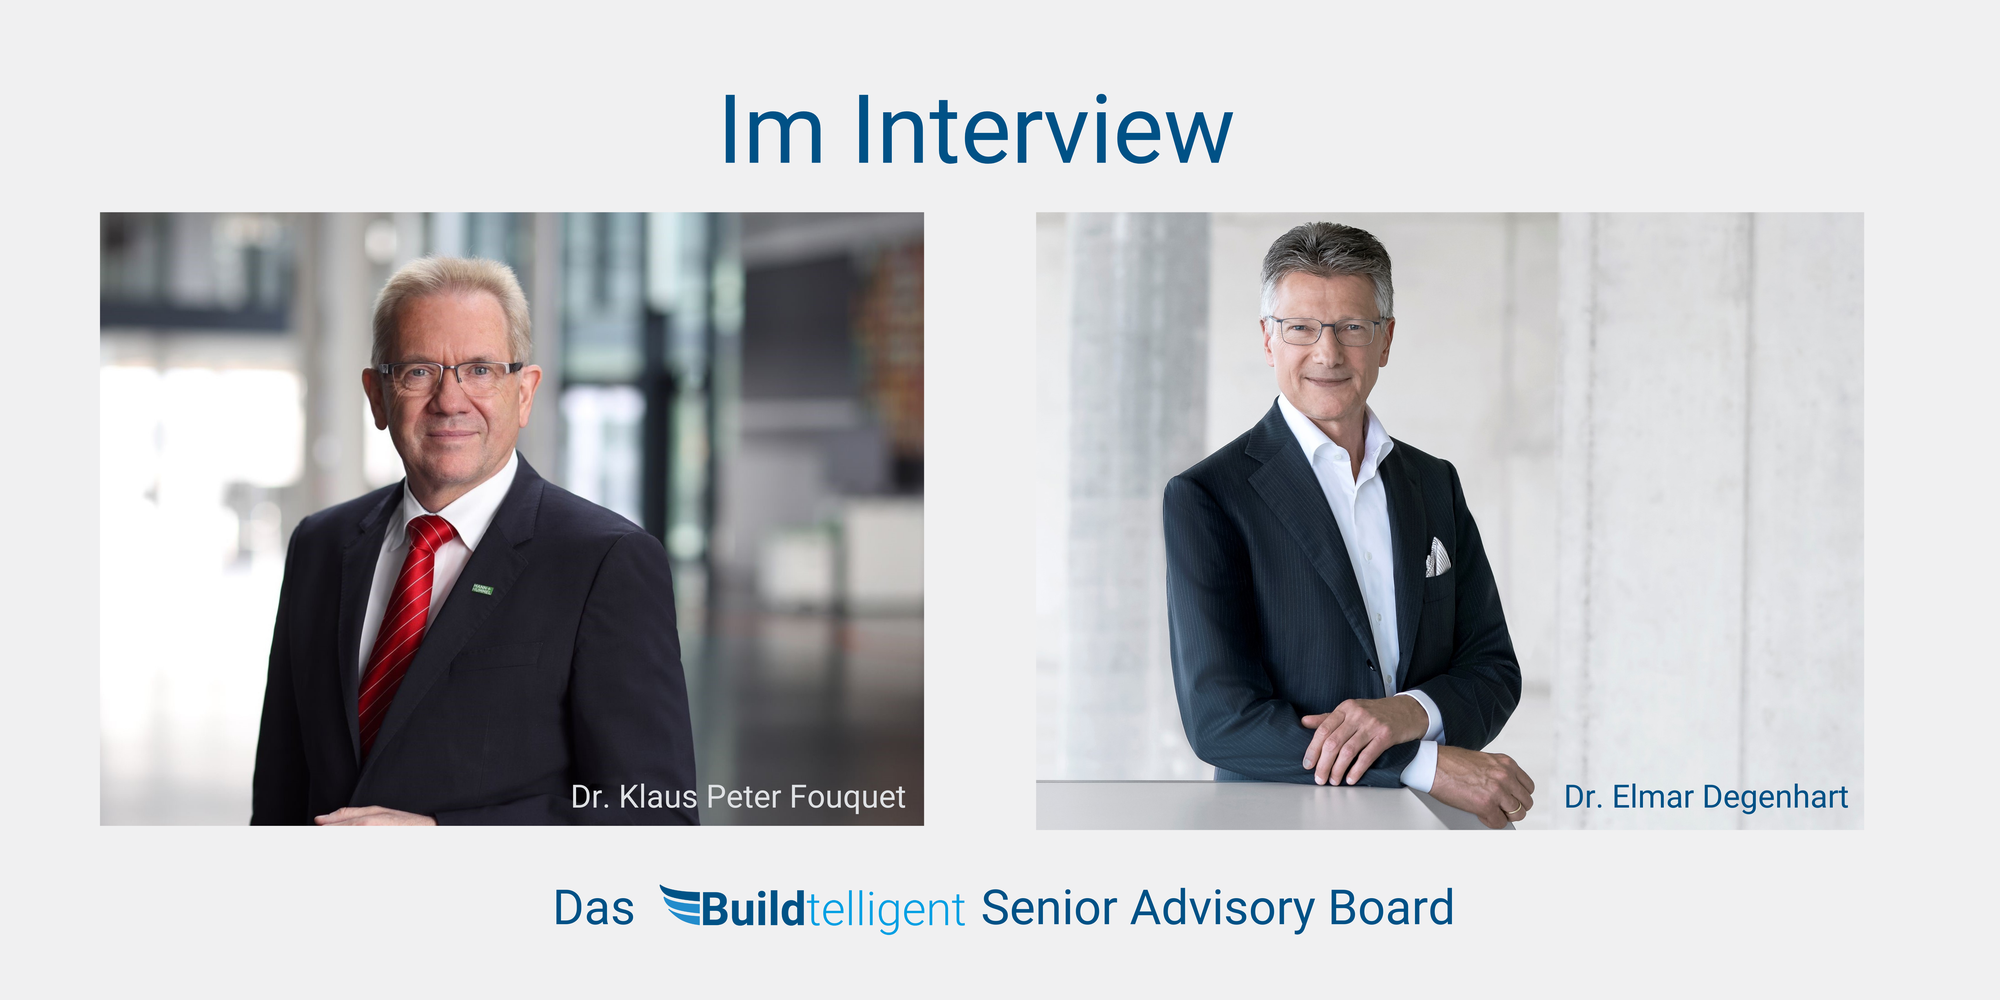 Unser Senior Advisory Board – zwei CEOs im persönlichen Interview